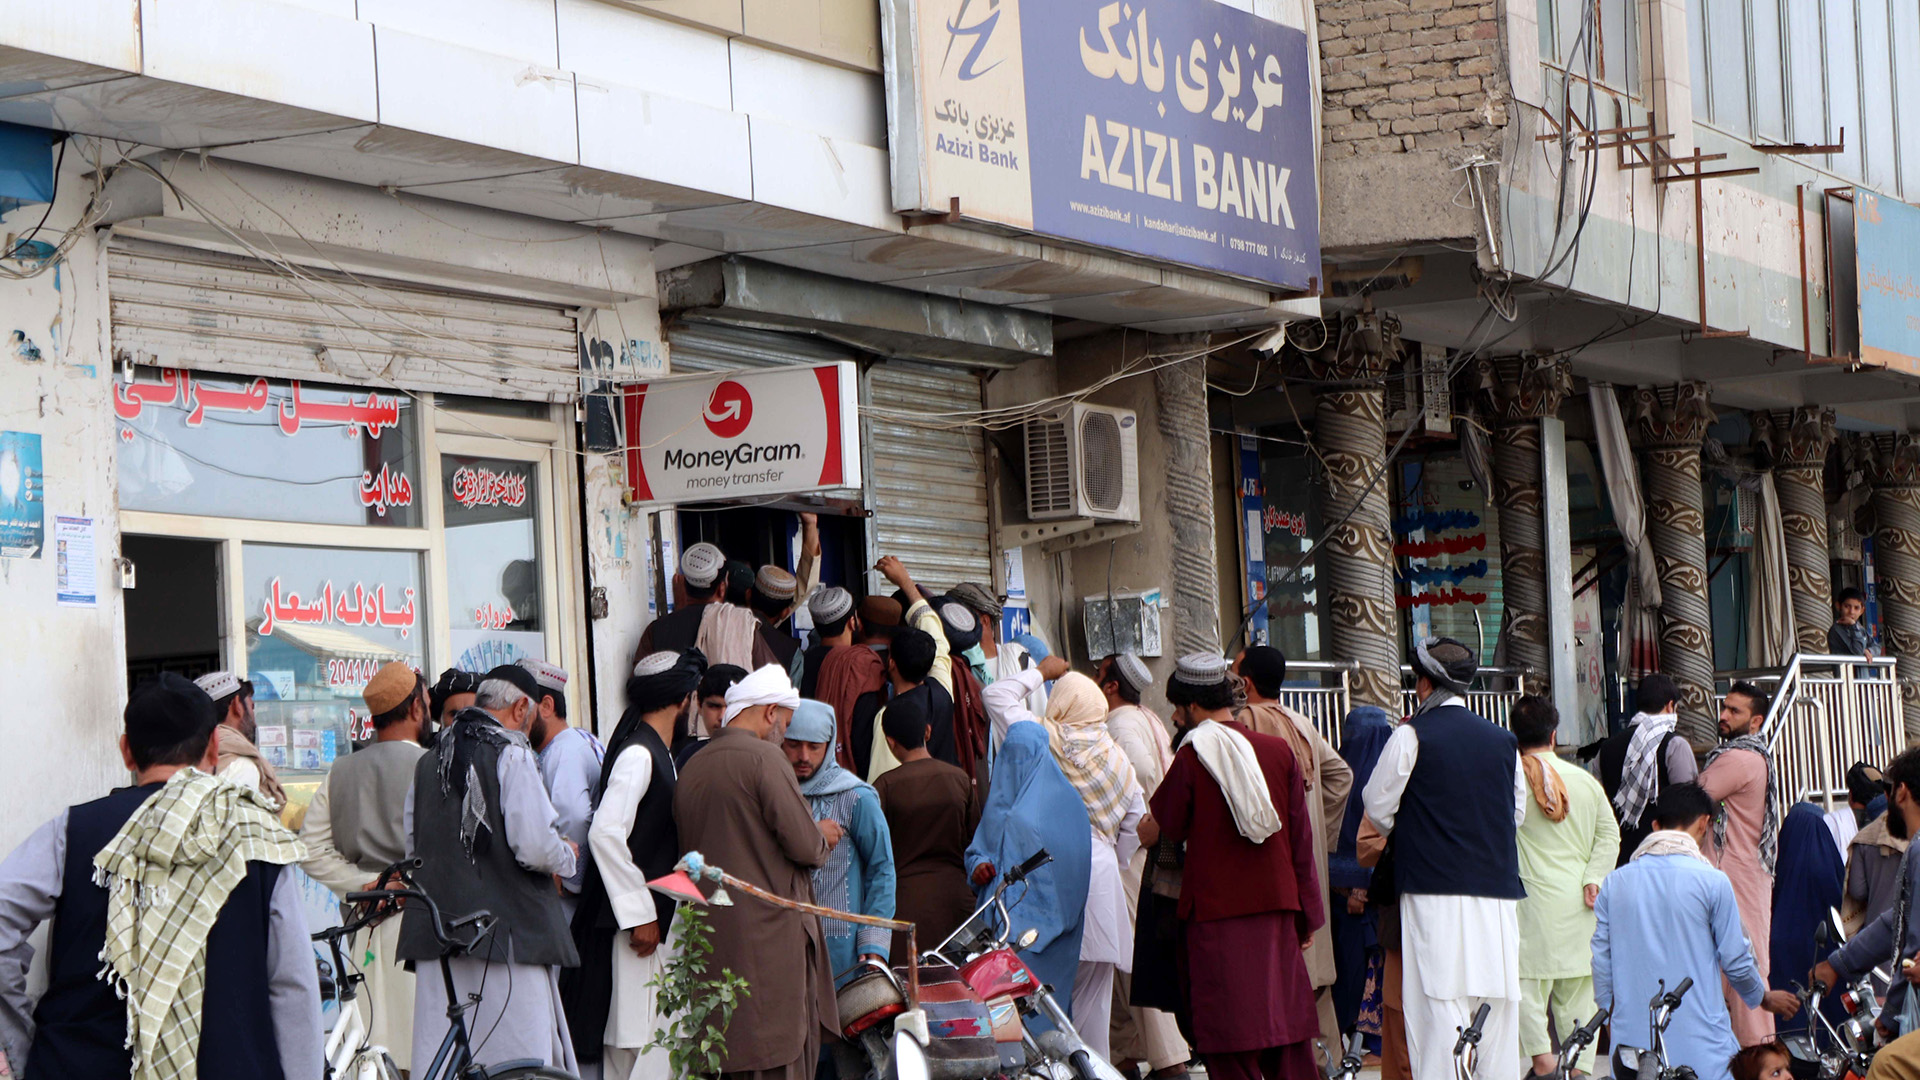 Banken in Afghanistan drohen zusammenzubrechen